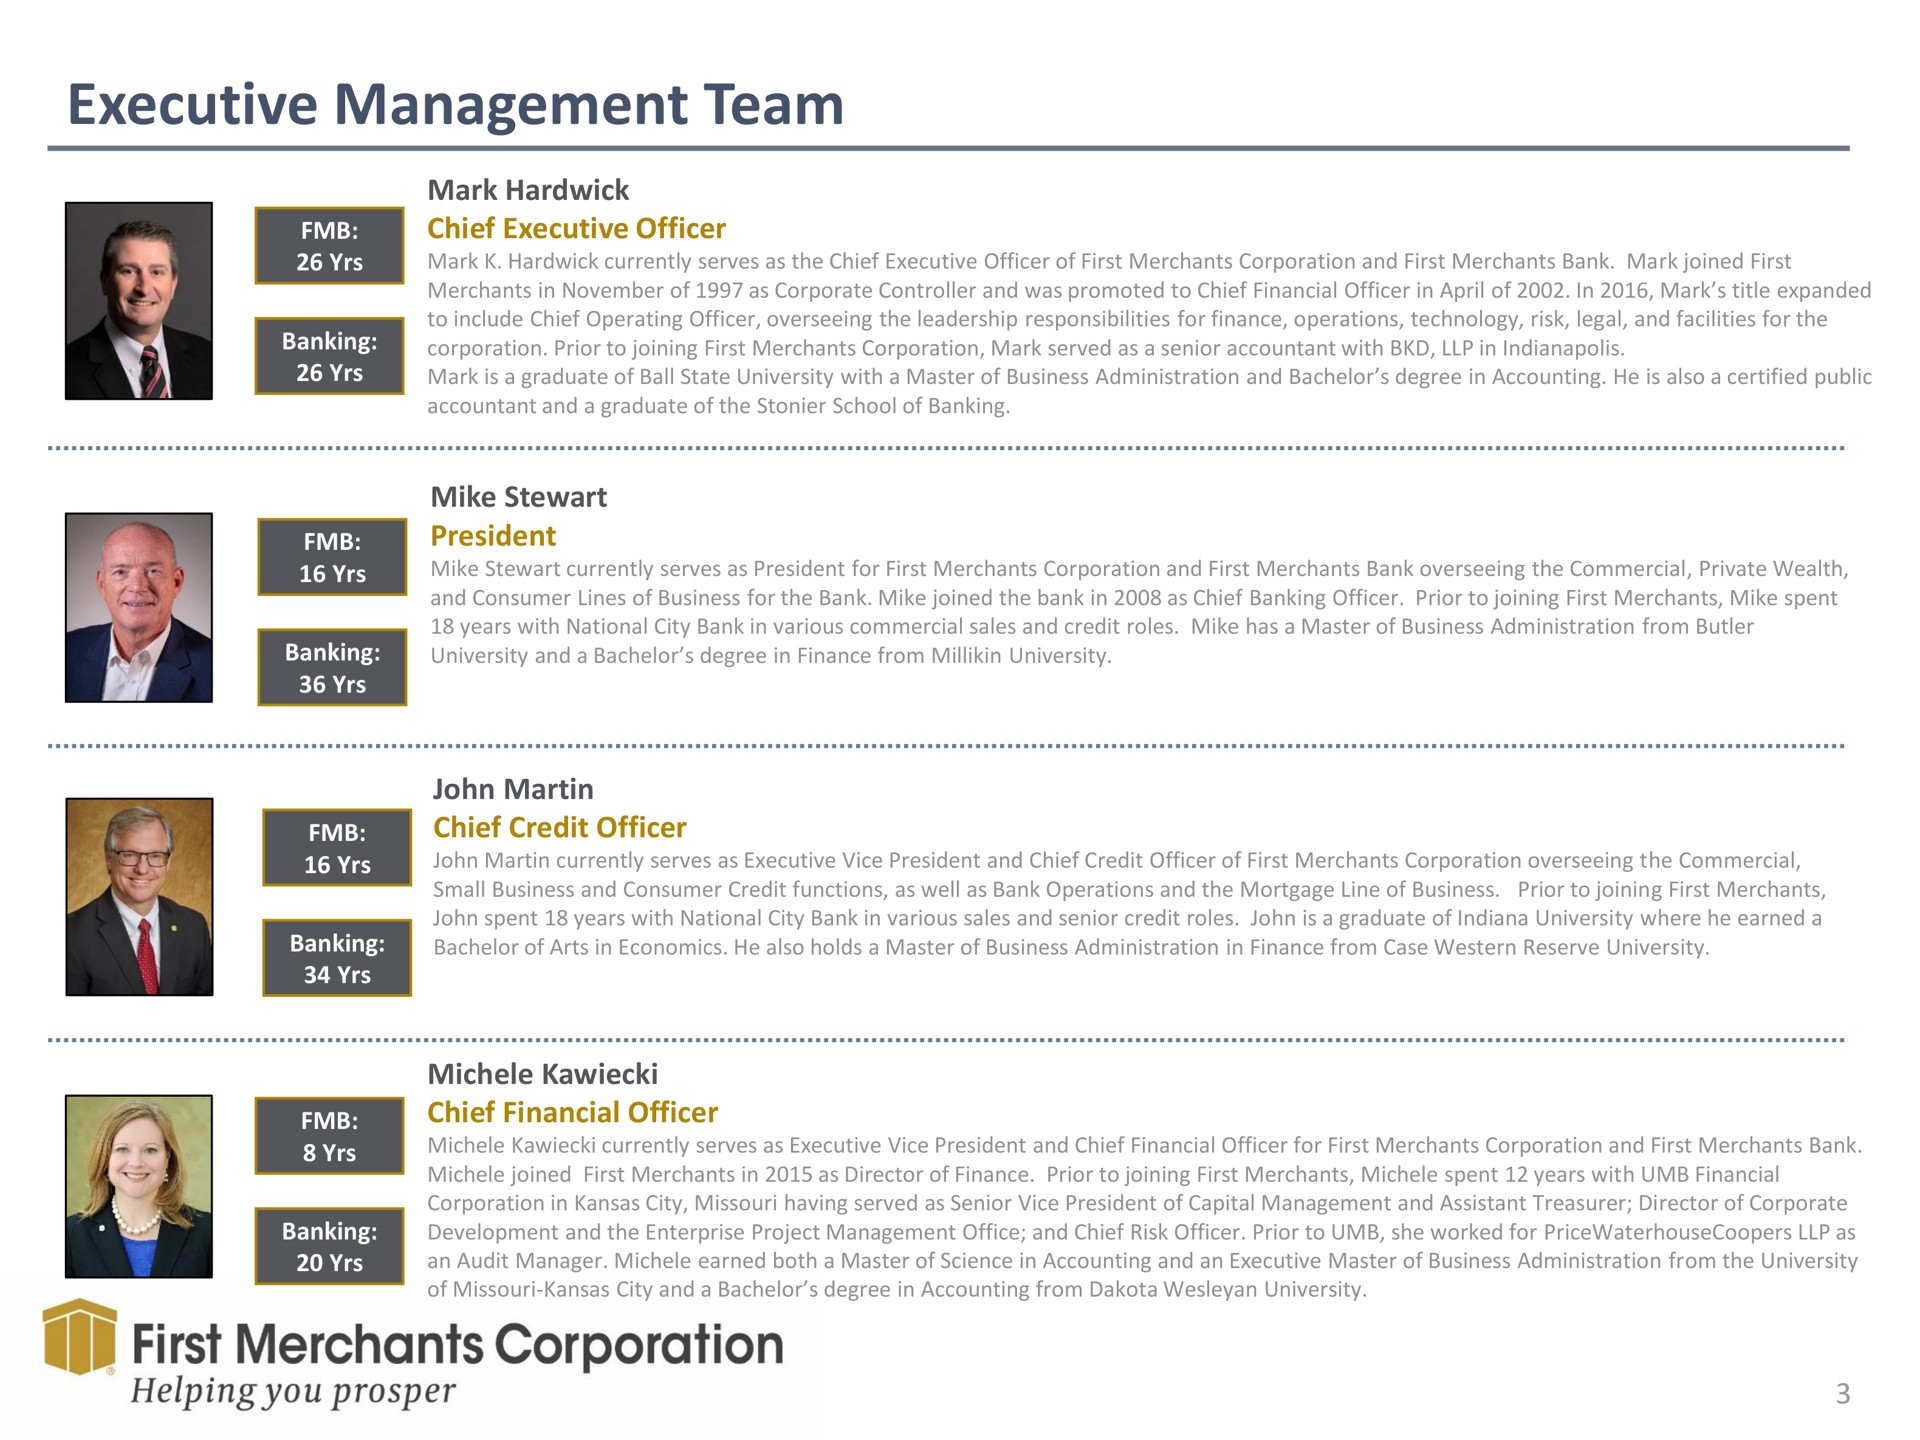 executive management team first merchants corporation helping you prosper | First Merchants